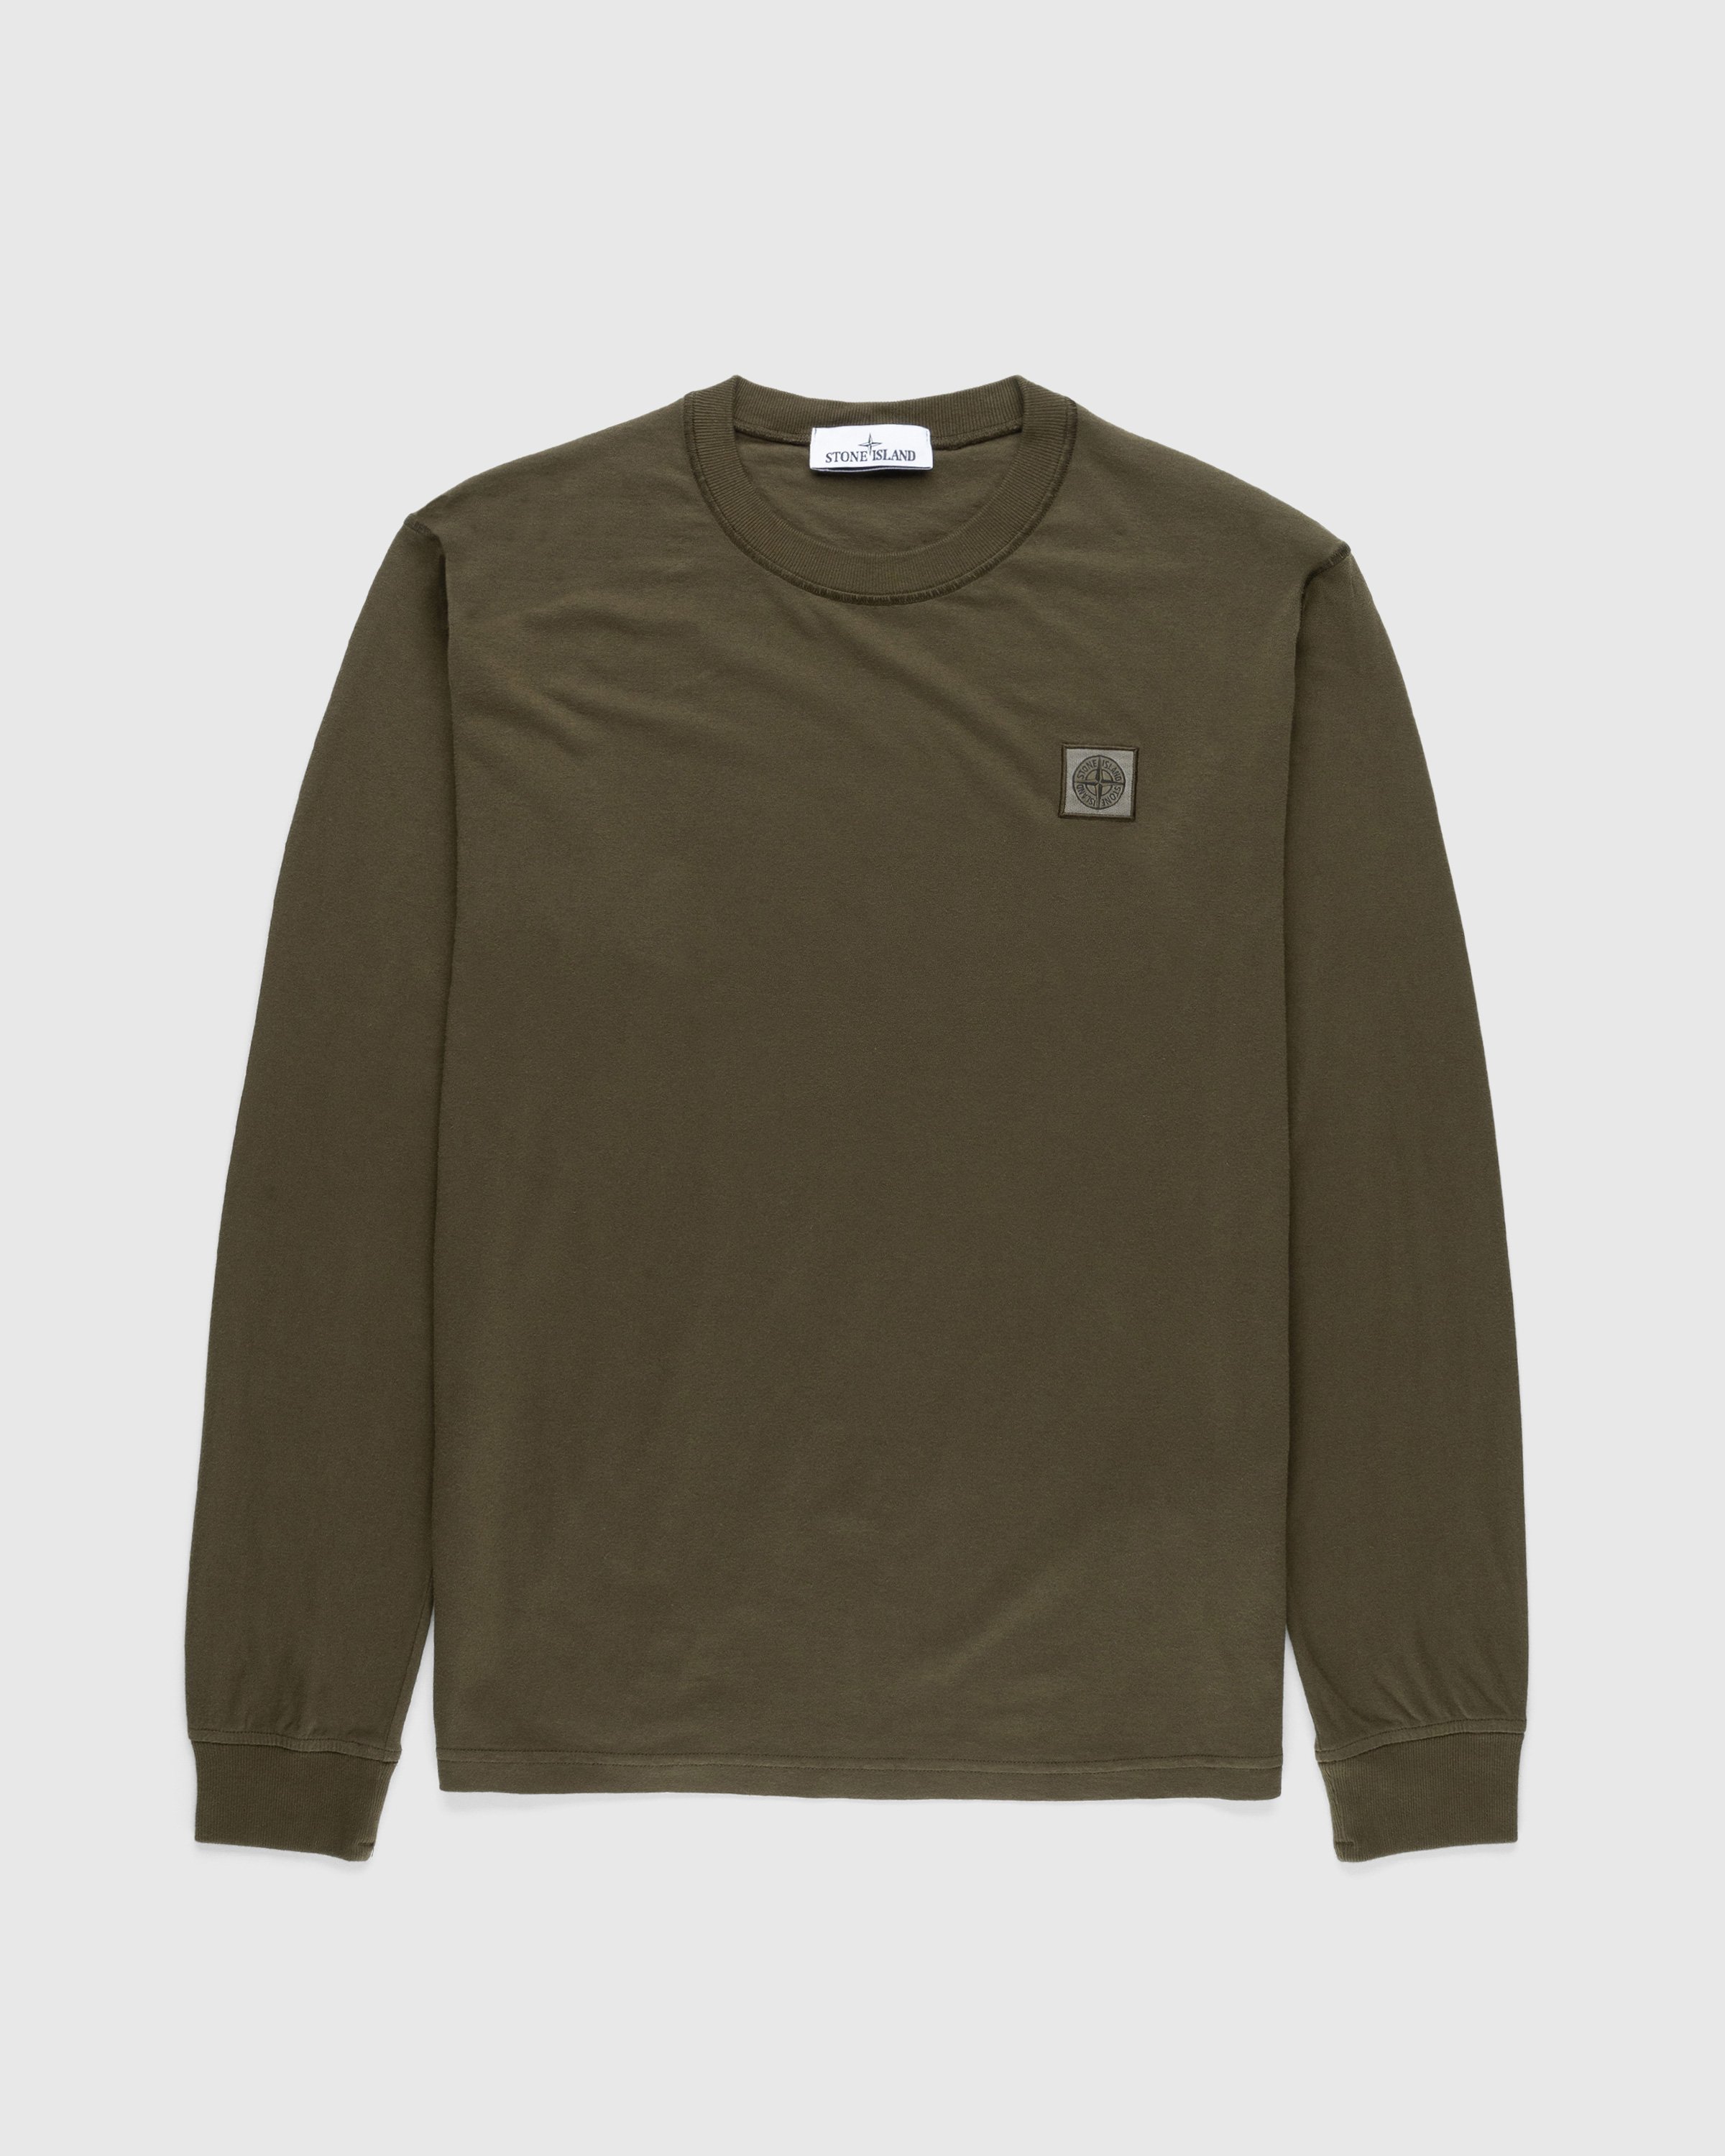 Stone Island - Fissato Longsleeve T-Shirt Olive - Clothing - Green - Image 1